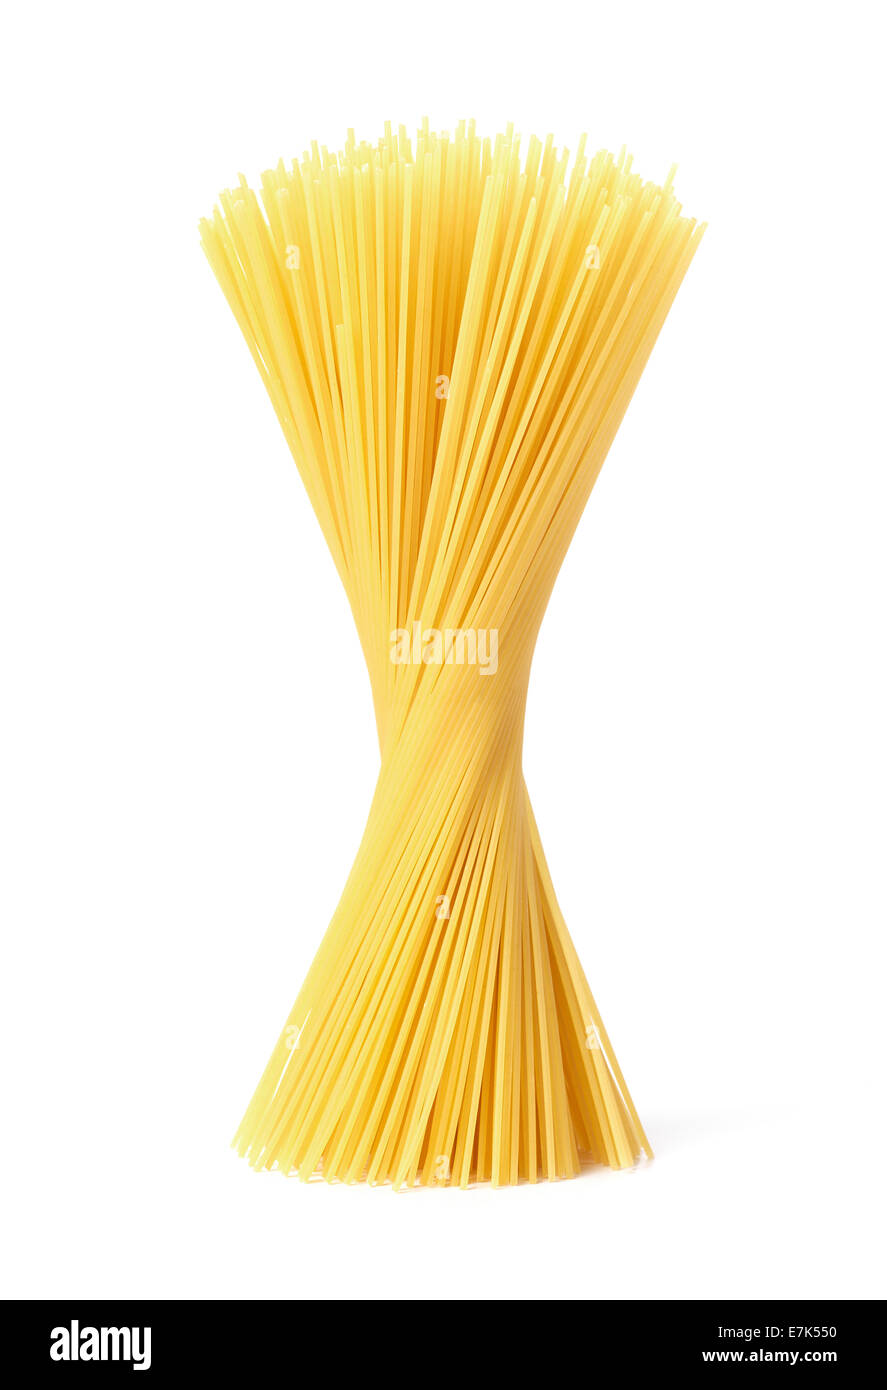 Isolierte Spaghetti Nudeln Stockfoto